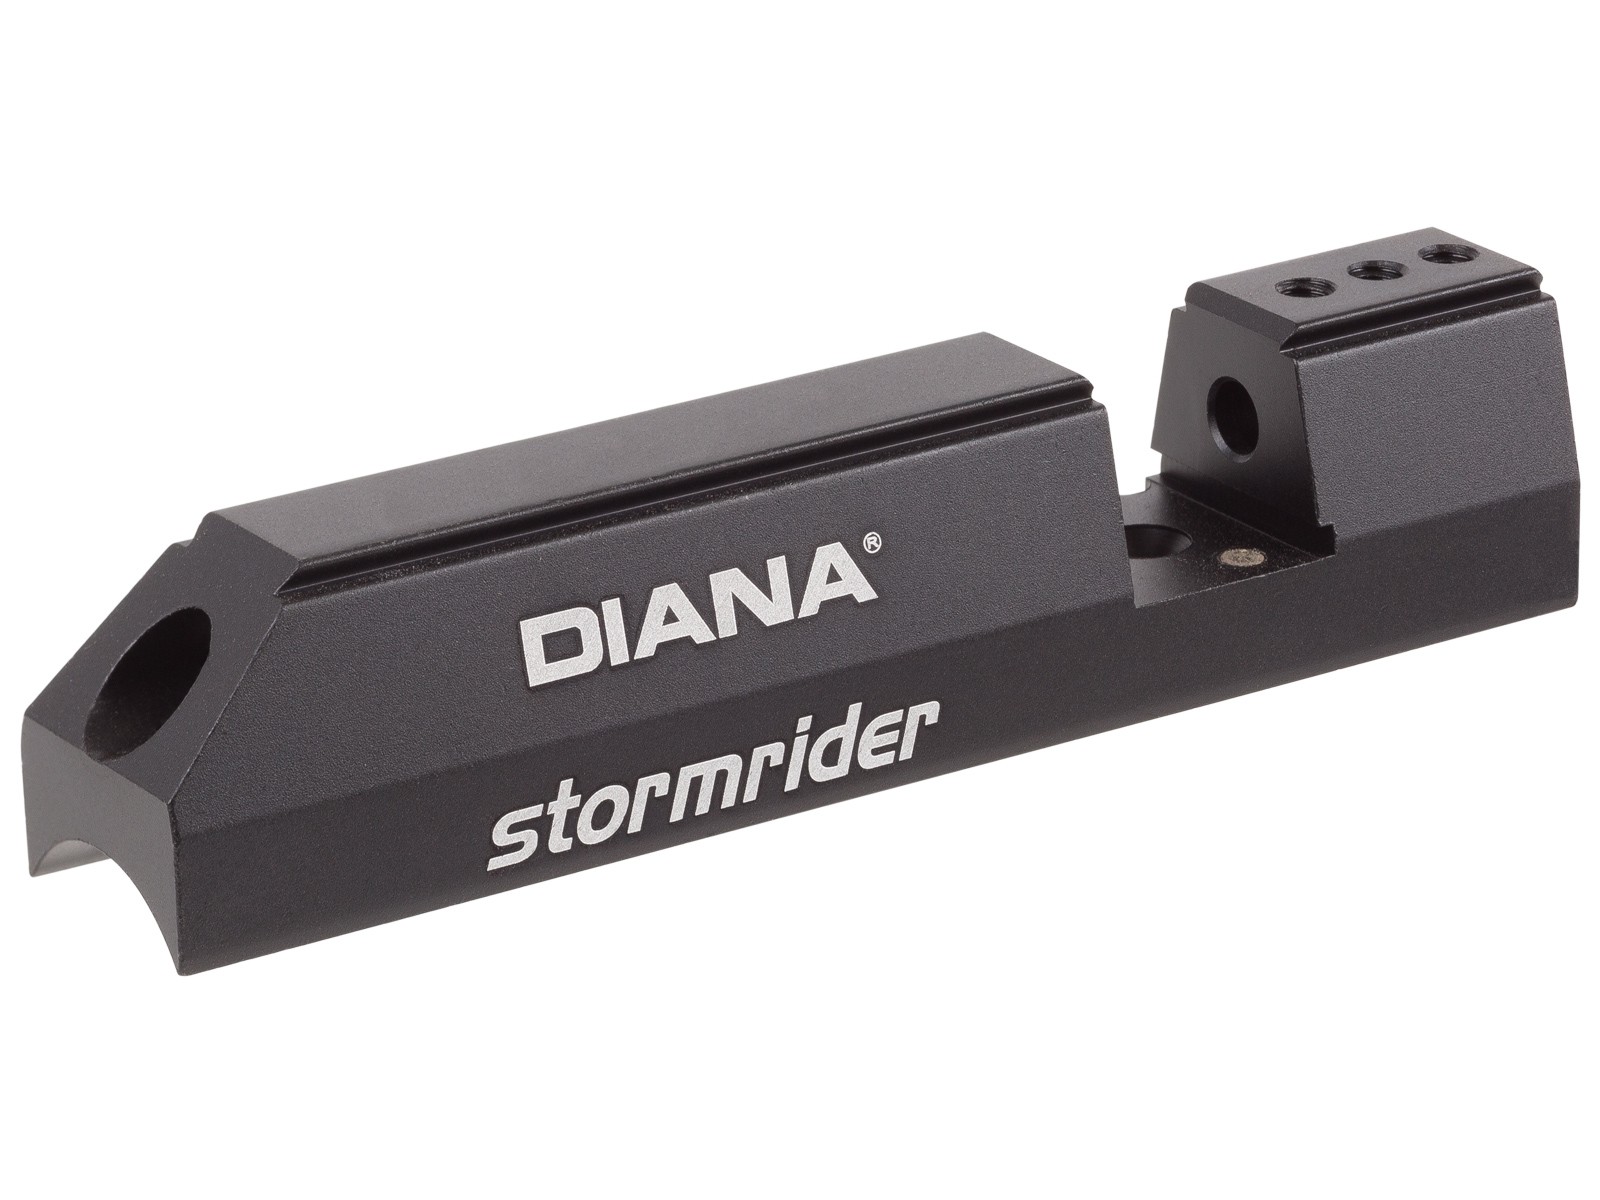 Diana Stormrider Breech Block .177, Left-Handed